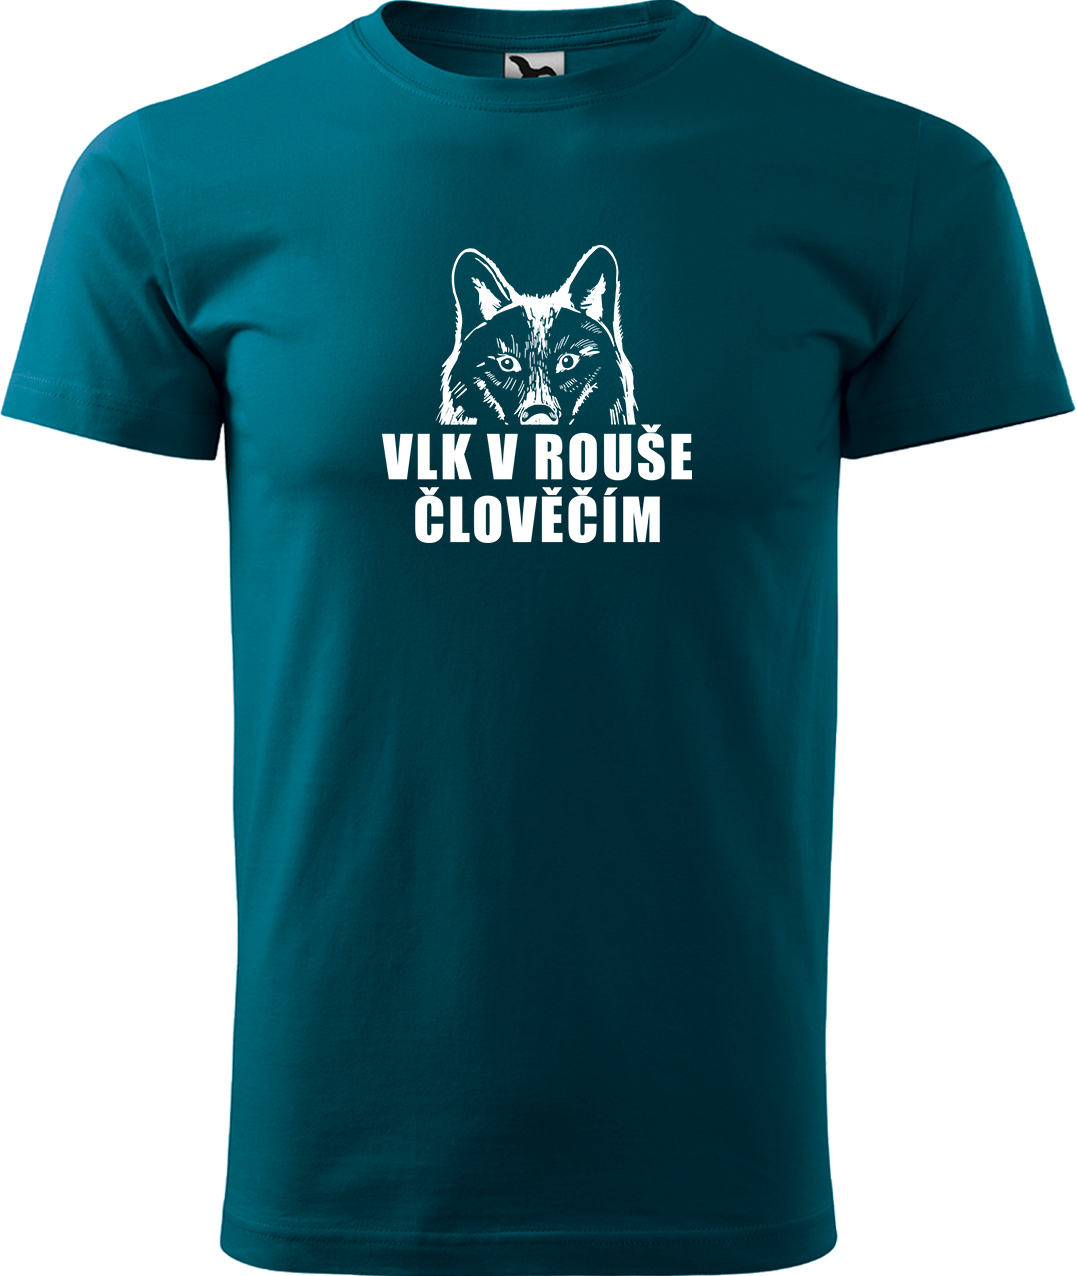 Pánské tričko s vlkem - Vlk v rouše člověčím Velikost: S, Barva: Petrolejová (93), Střih: pánský